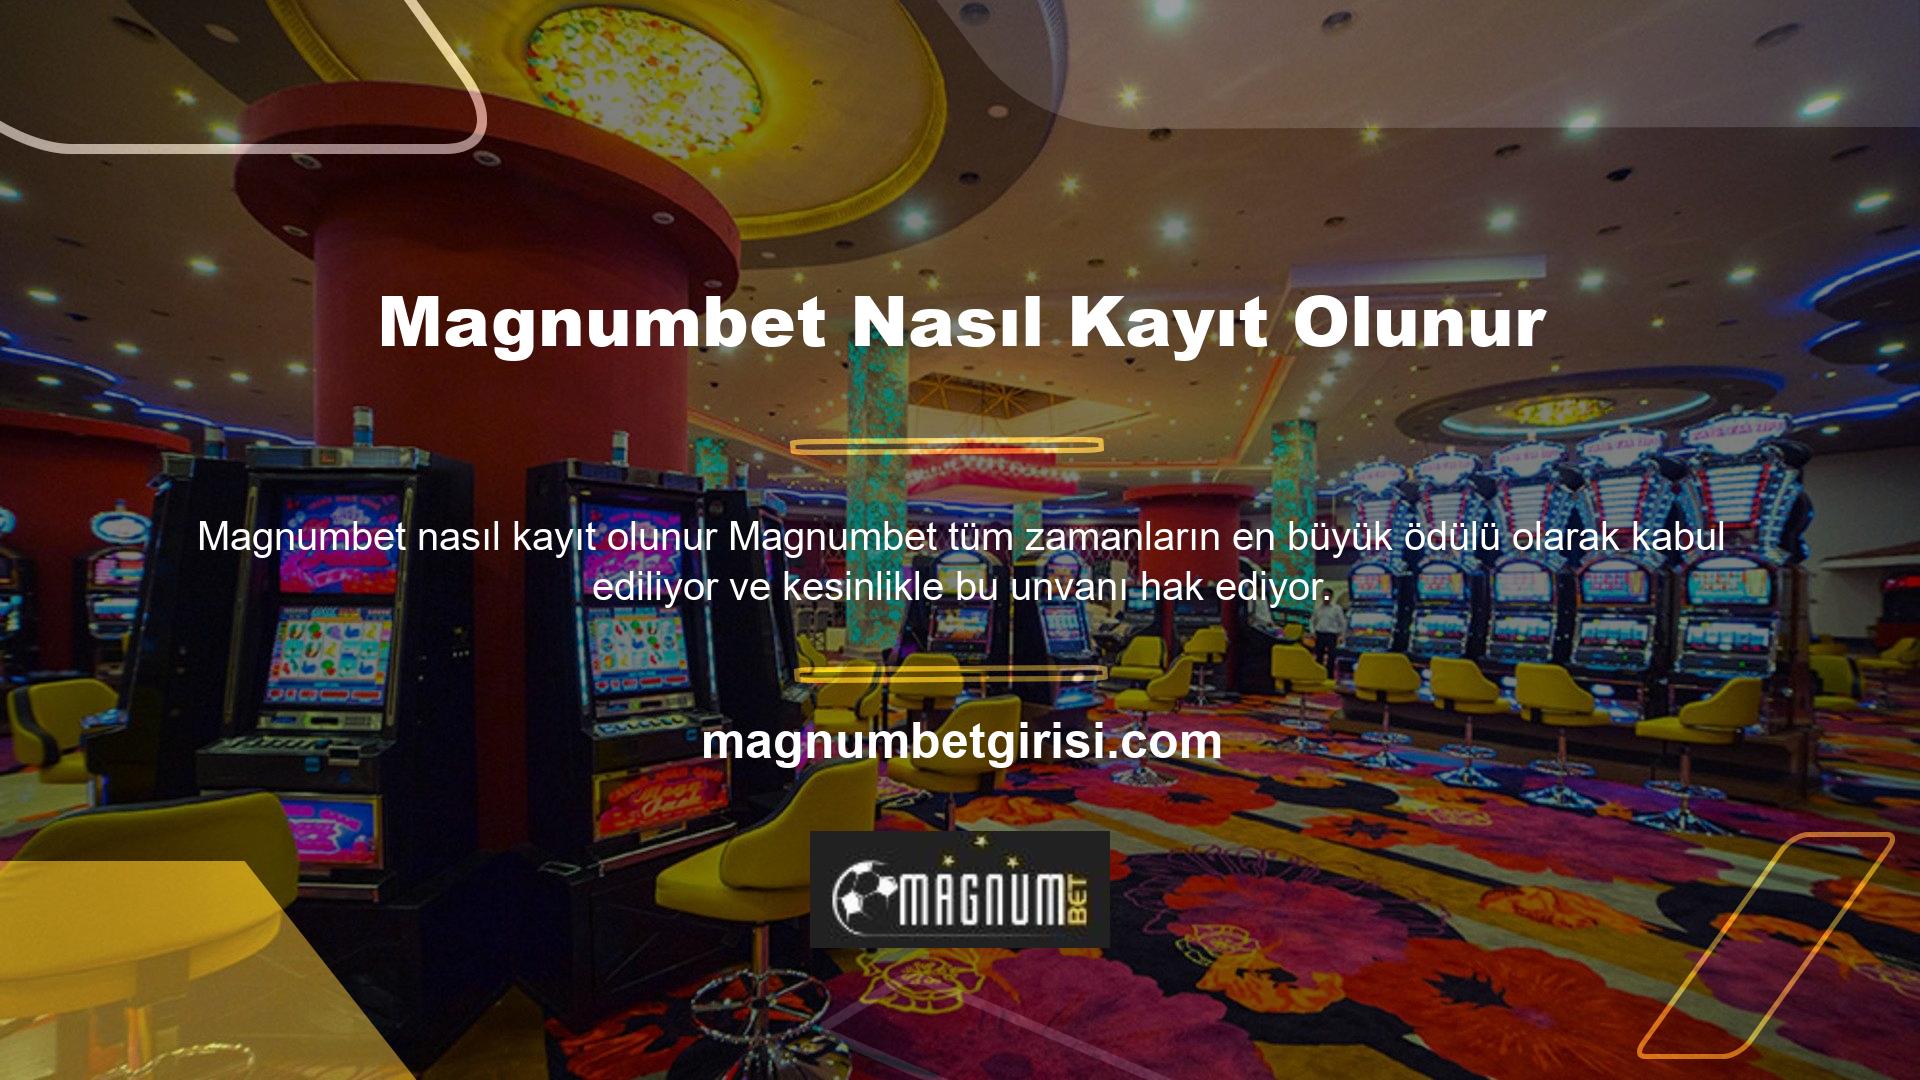 Magnumbet, birçok bonus seçeneği ile birlikte en hızlı genel hizmeti sunmaya devam ediyor